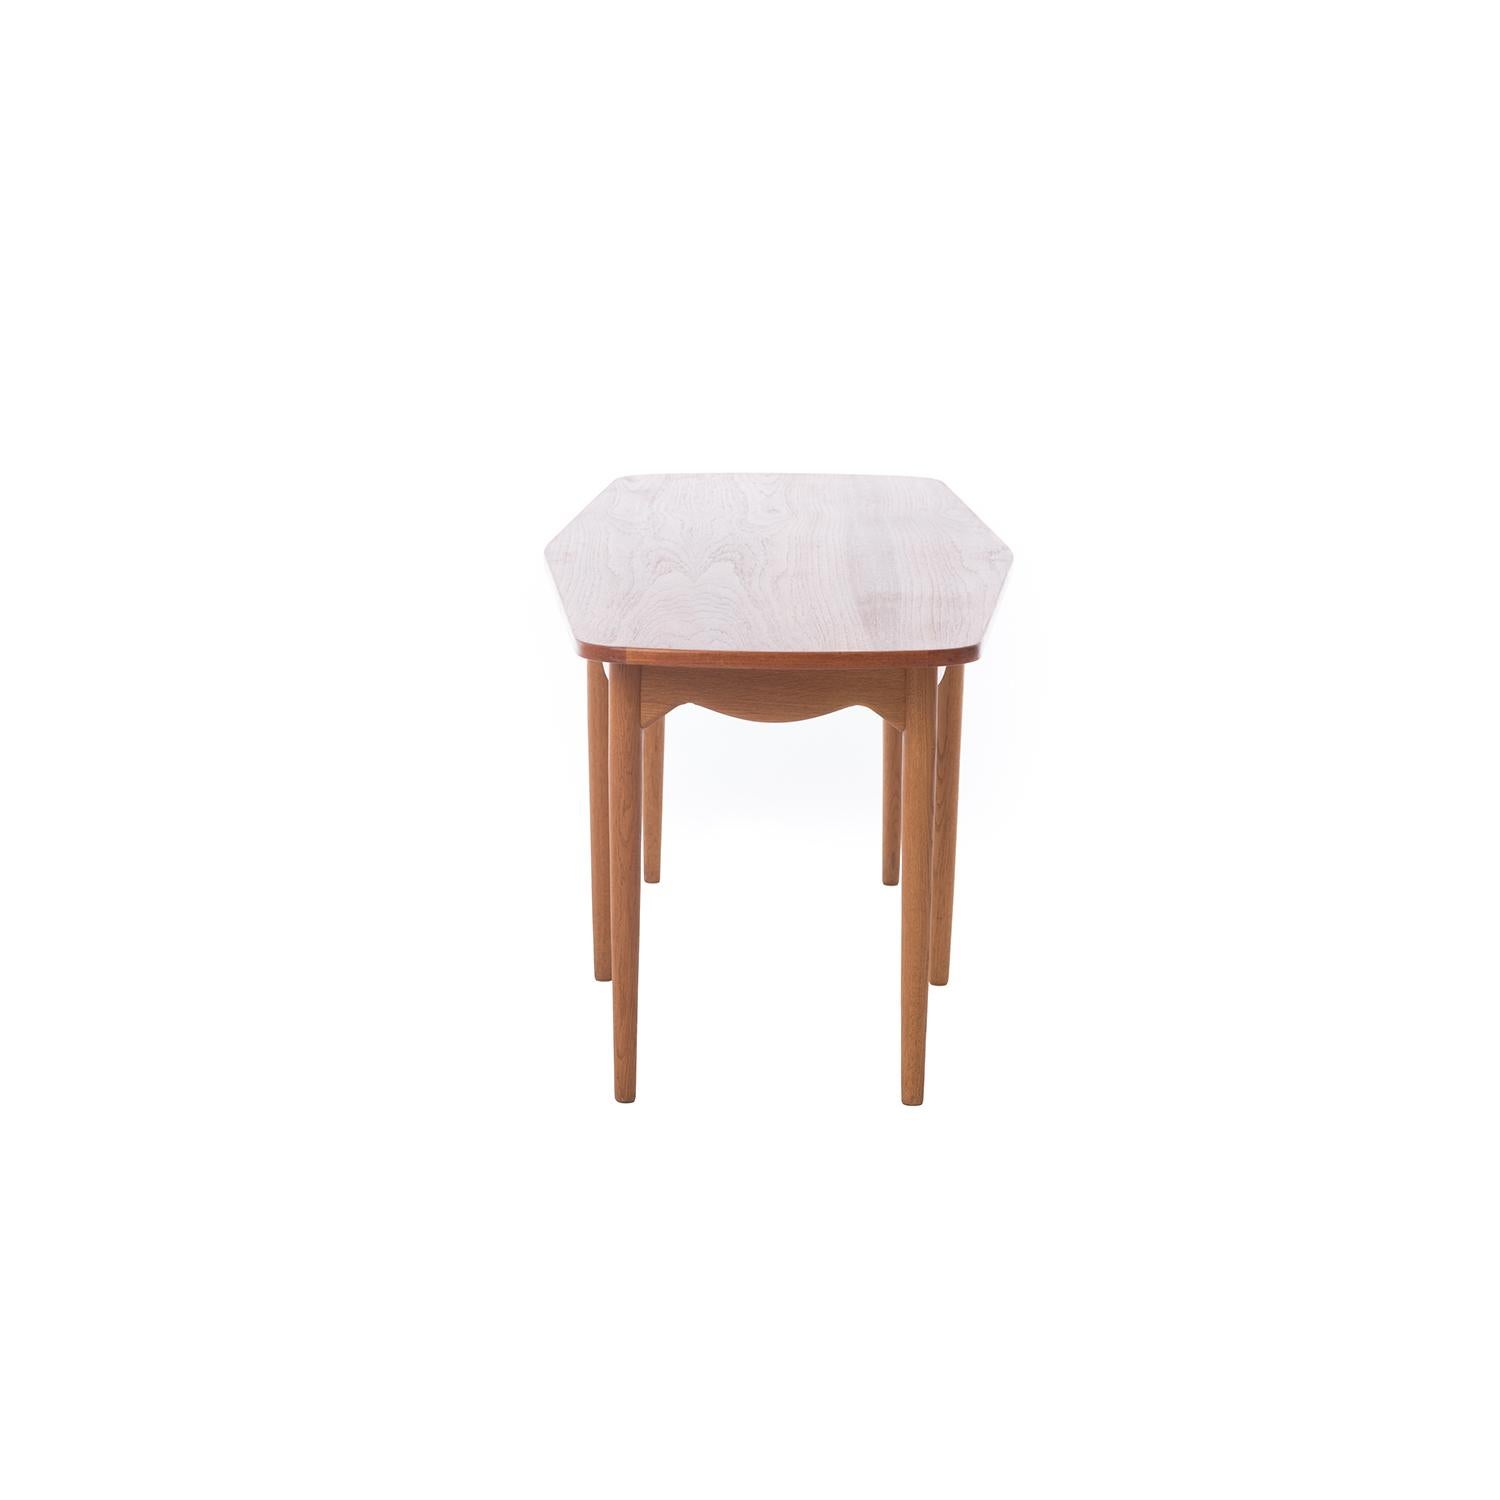 Oiled Scandinavian Modern Kurt Ostervig Six-Legged Coffee Table with Sculptural Apron